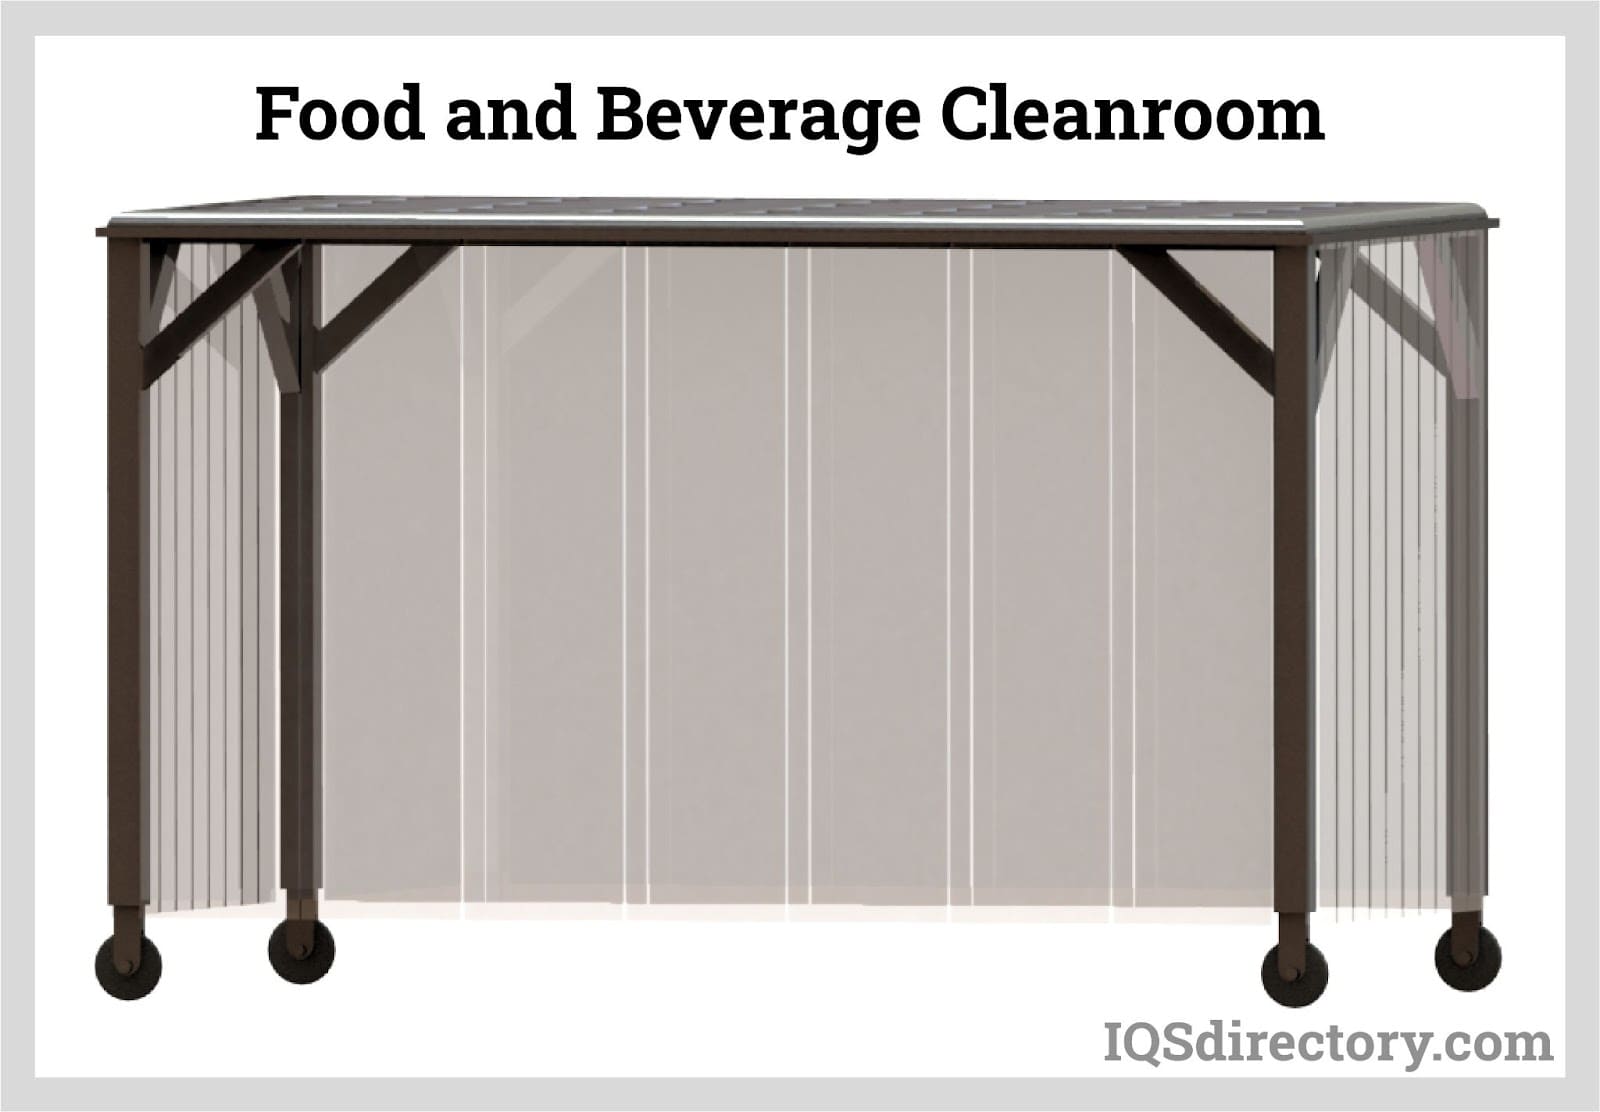 Food and Beverage Cleanroom